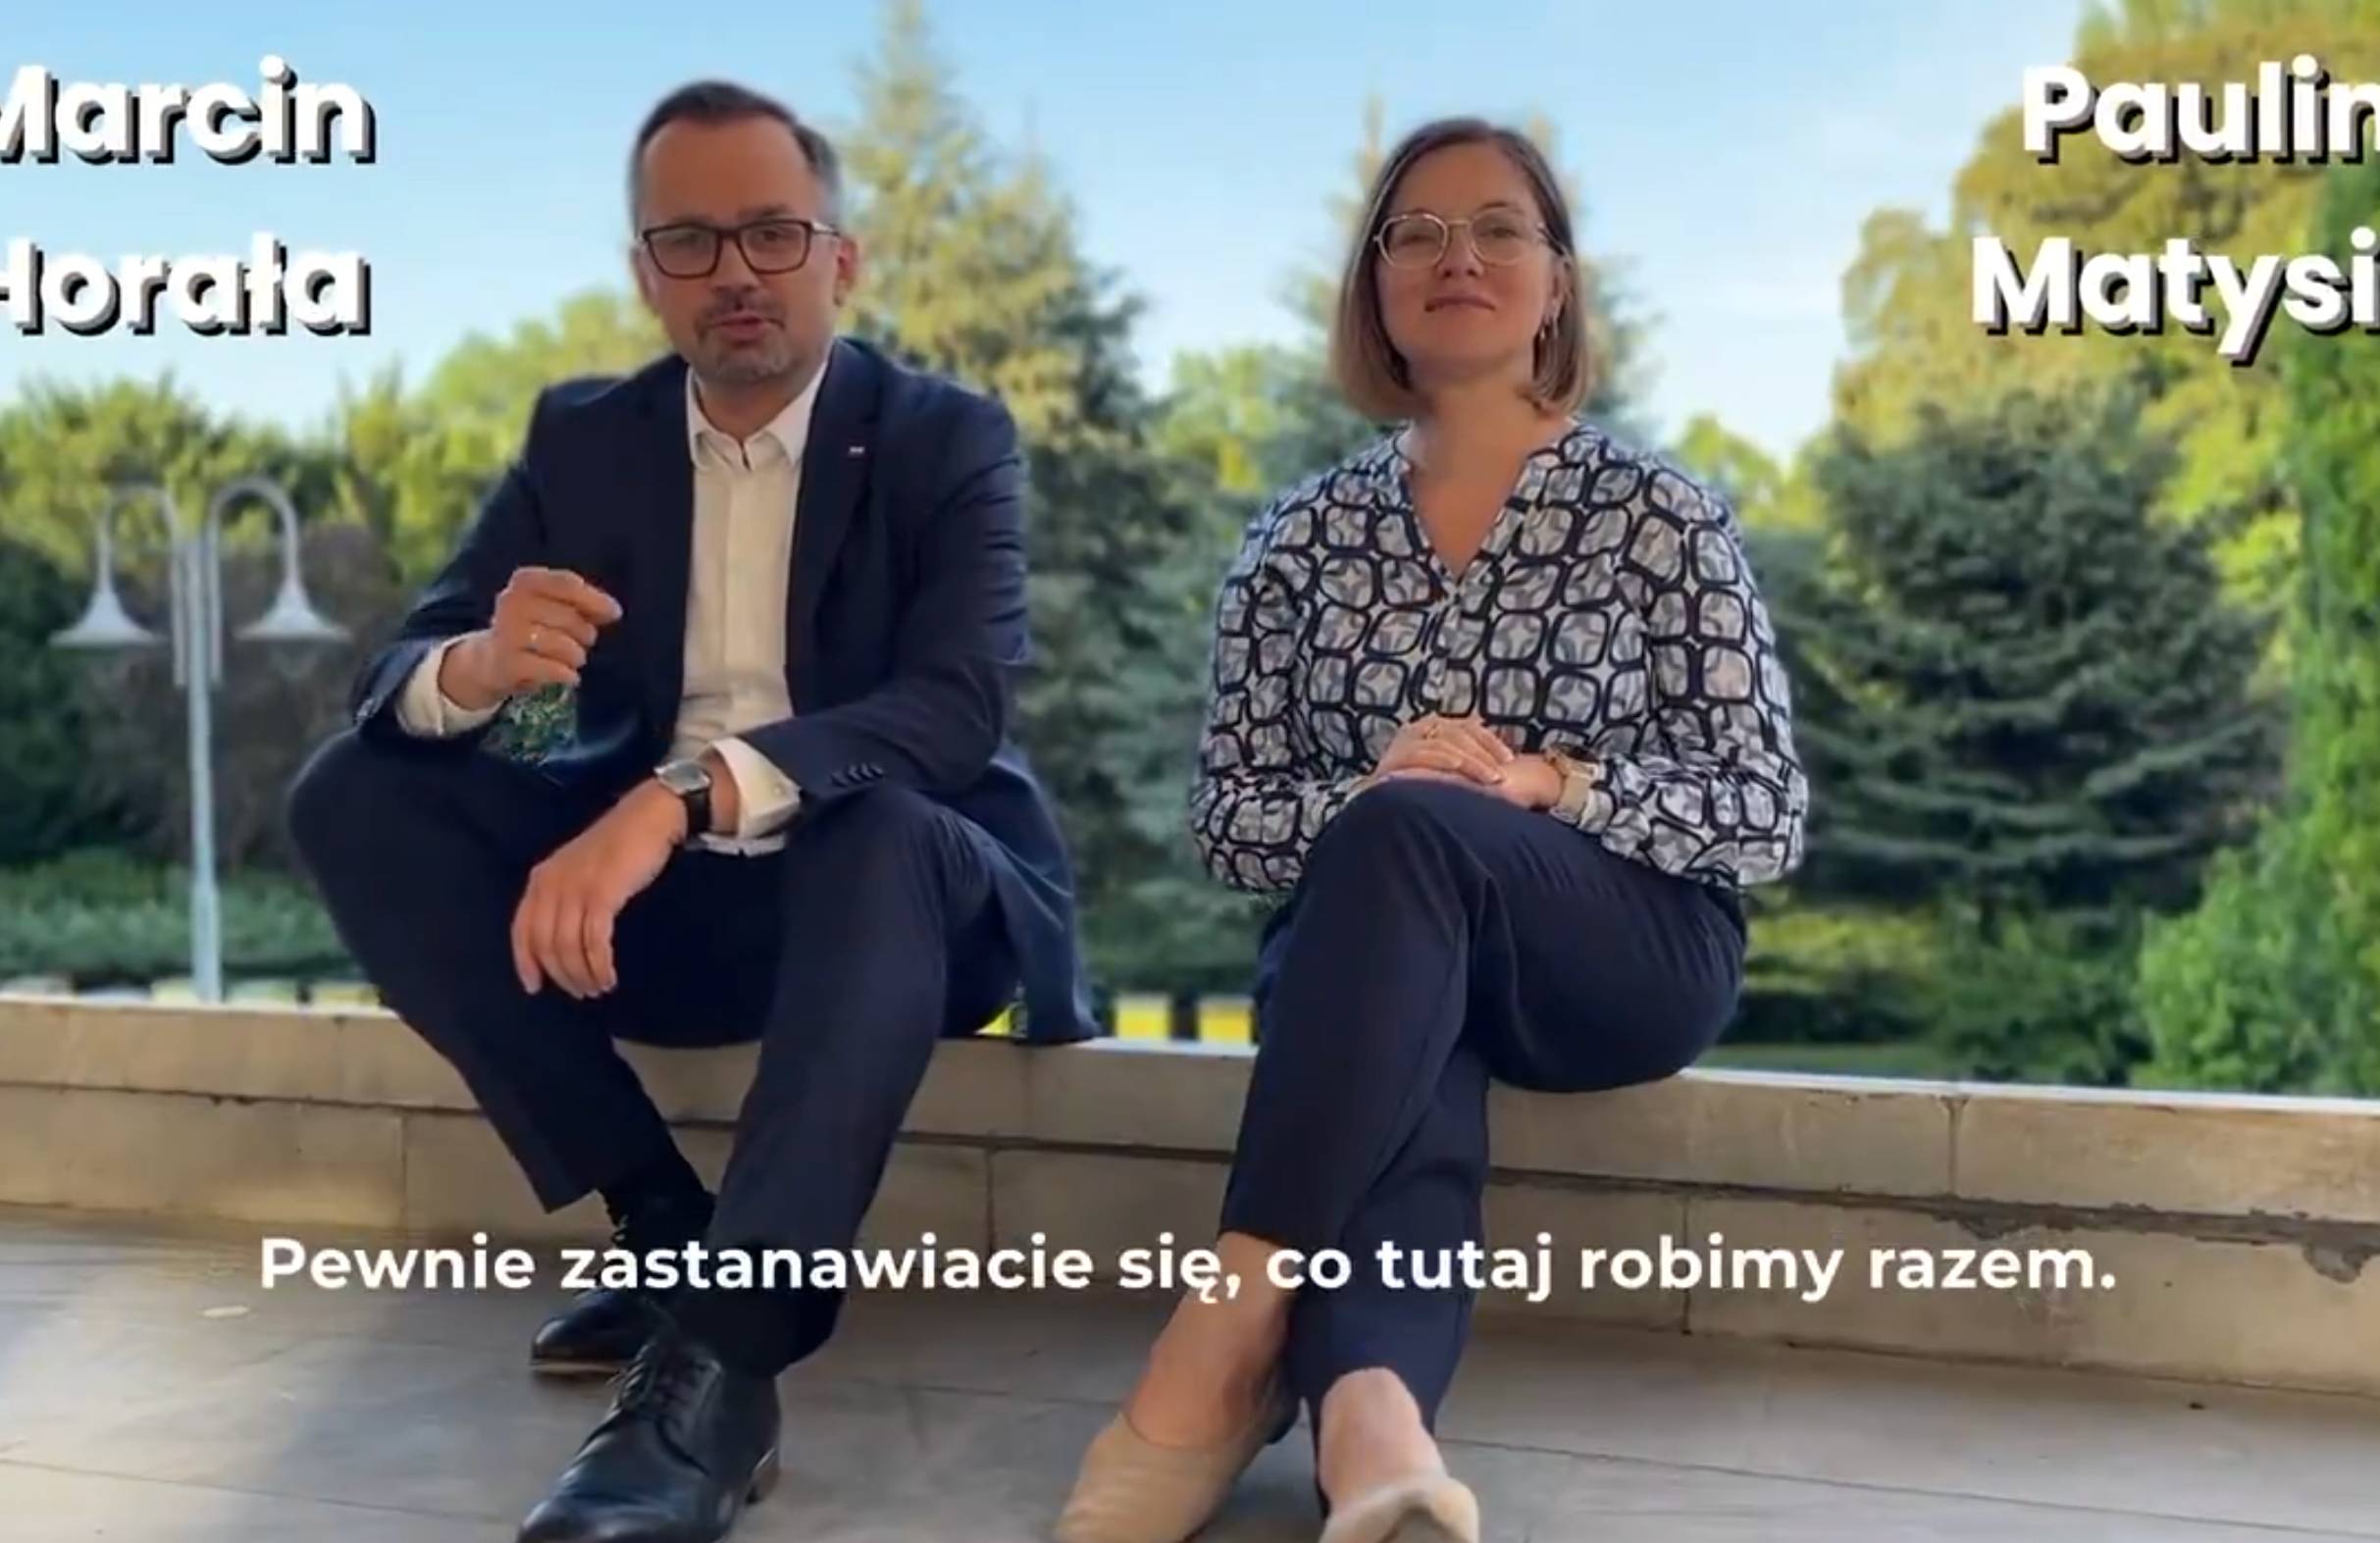 Marcin Horała z PiS i Paulina Matysiak z Razem siedzą na murku w eleganckich ubraniach. "Pewnie zastanawiacie się, co tutaj robimy razem" - glosi podpis